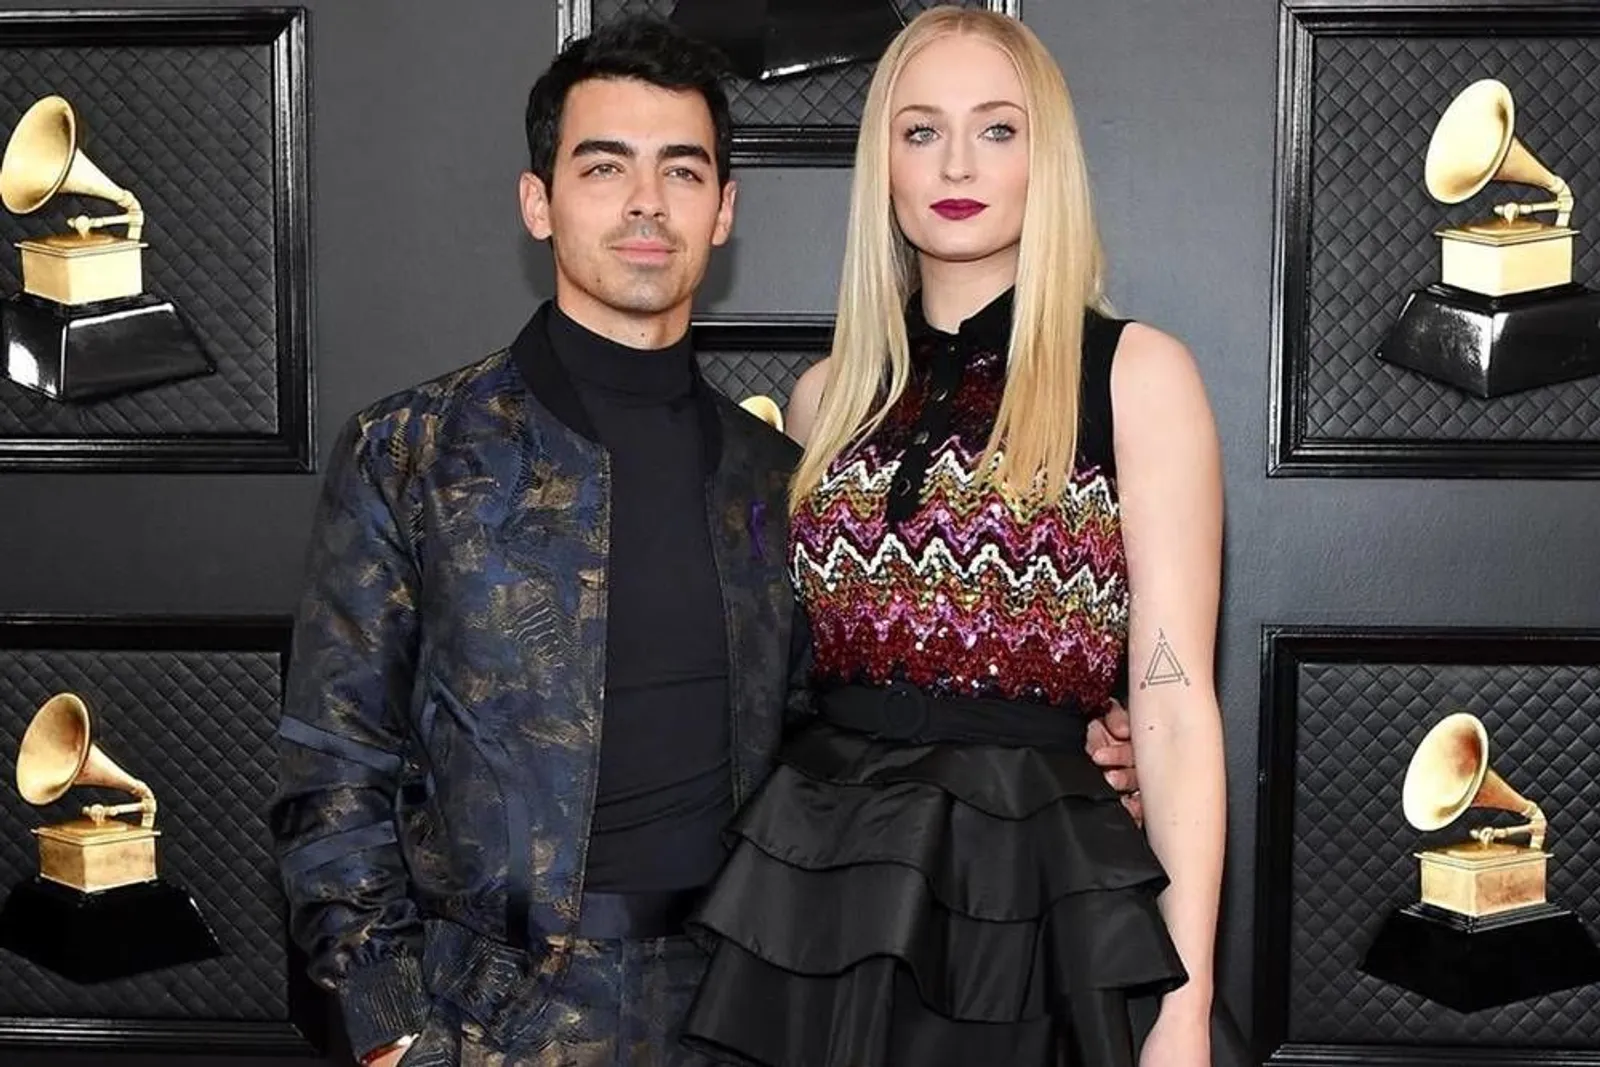 Mesra! 10 Pasangan yang Ramaikan Karpet Merah Grammys 2020